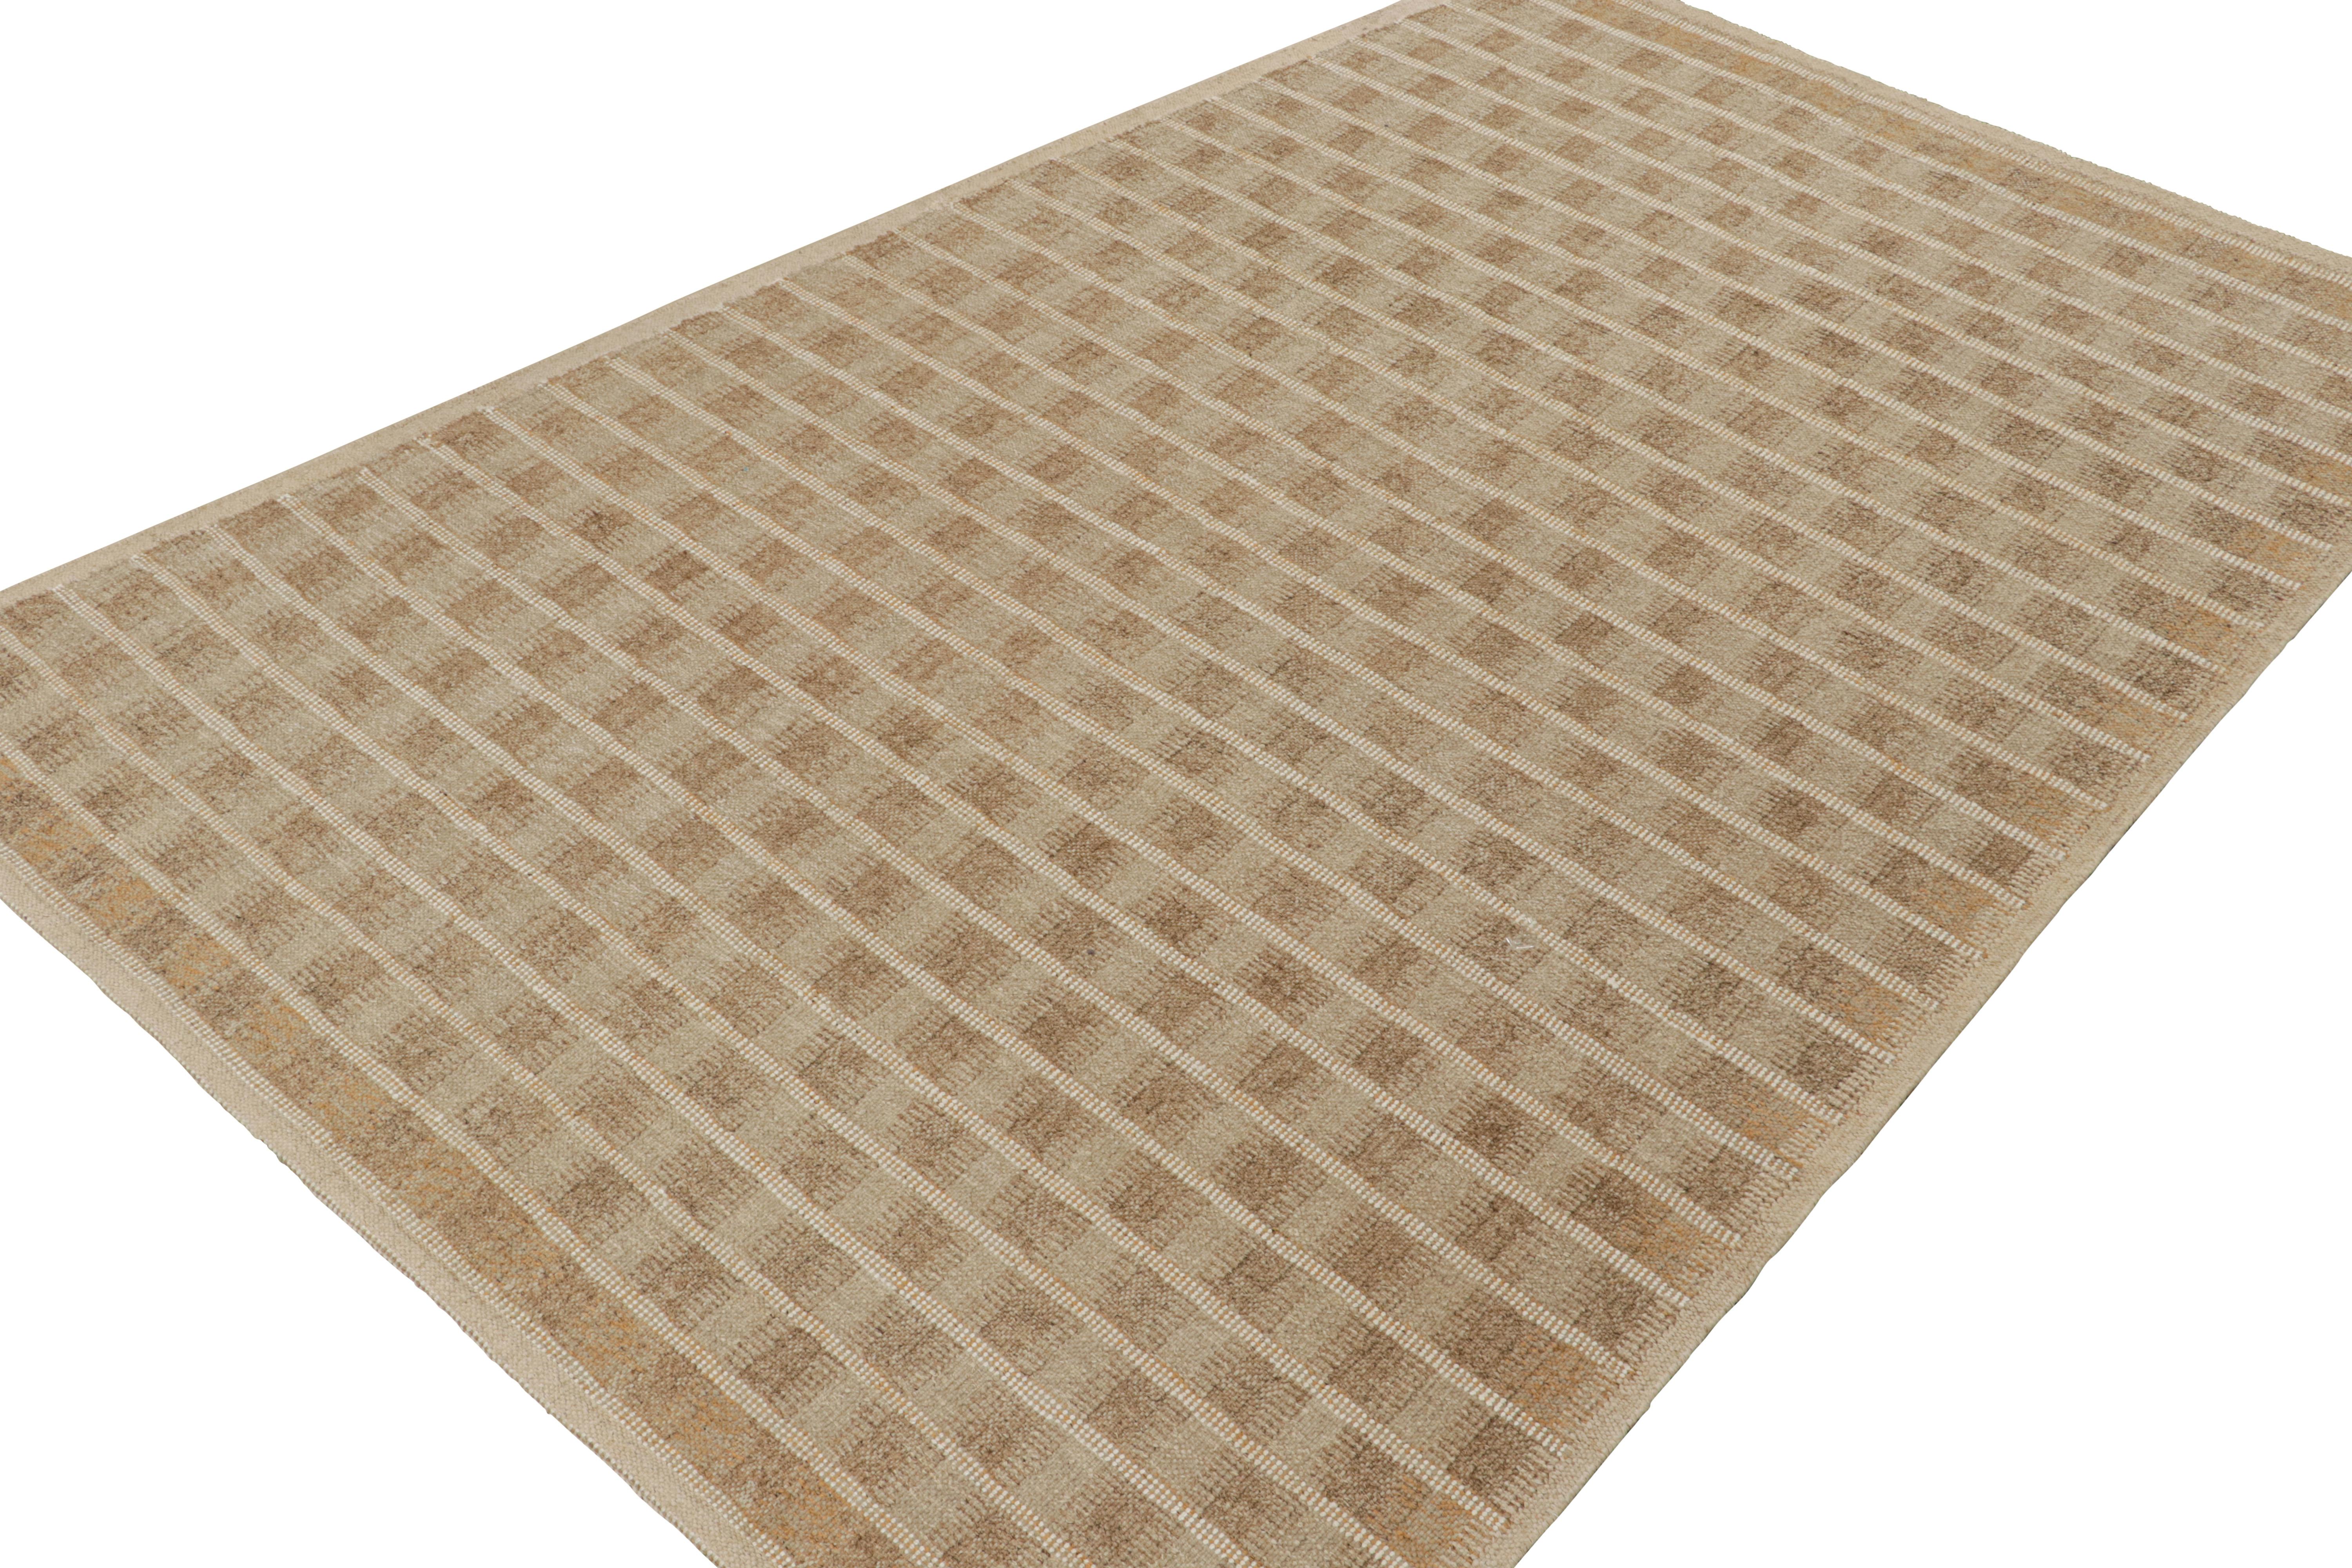 Dieses individuelle Teppichdesign repräsentiert Flachgewebe im schwedischen Stil aus der Scandinavian Kilim Collection'S von Rug & Kilim.

Über das Design:

Diese Fotos zeigen einen ehemaligen 7x12 trapezförmigen Teppich, handgewebt aus